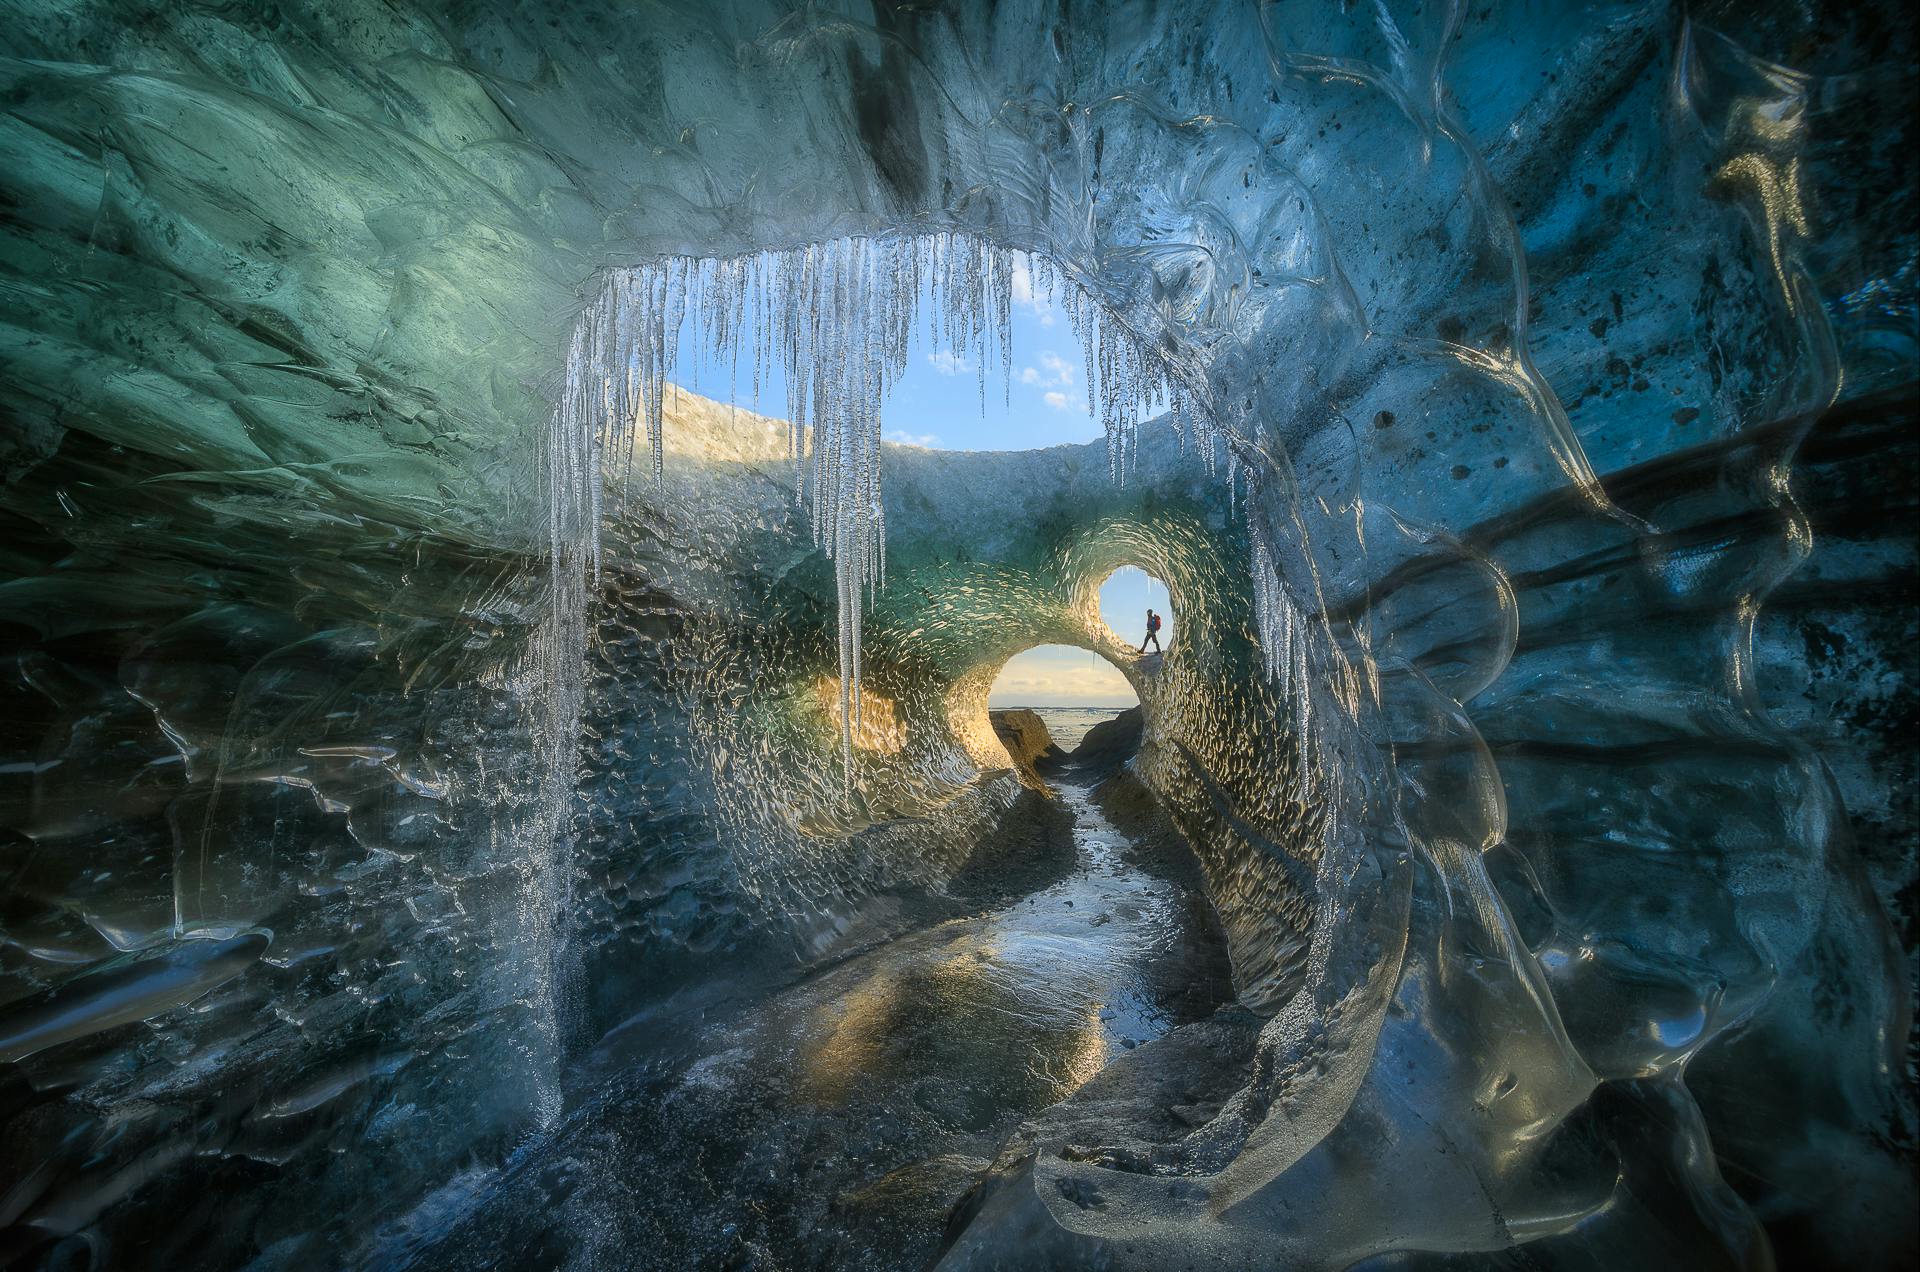 10泊11日冬のアイスランドの写真ワークショップ オーロラを狙い Iceland Photo Tours